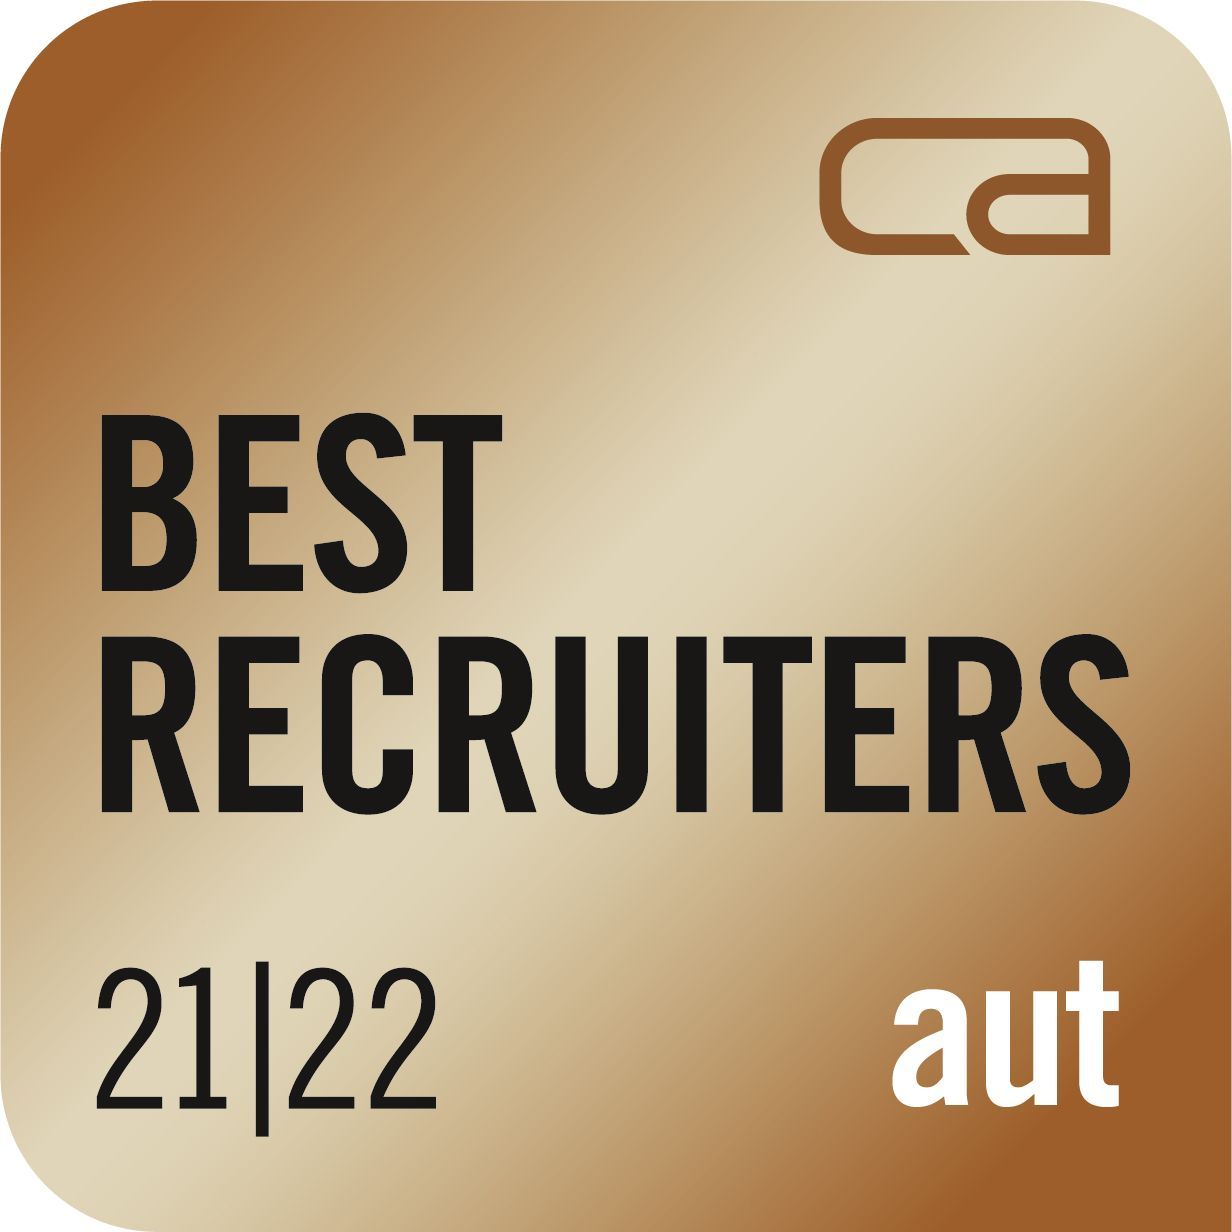 Abbildung des österreichischen Best Recruiter Gütesiegels in bronze für die Jahre 2020/21